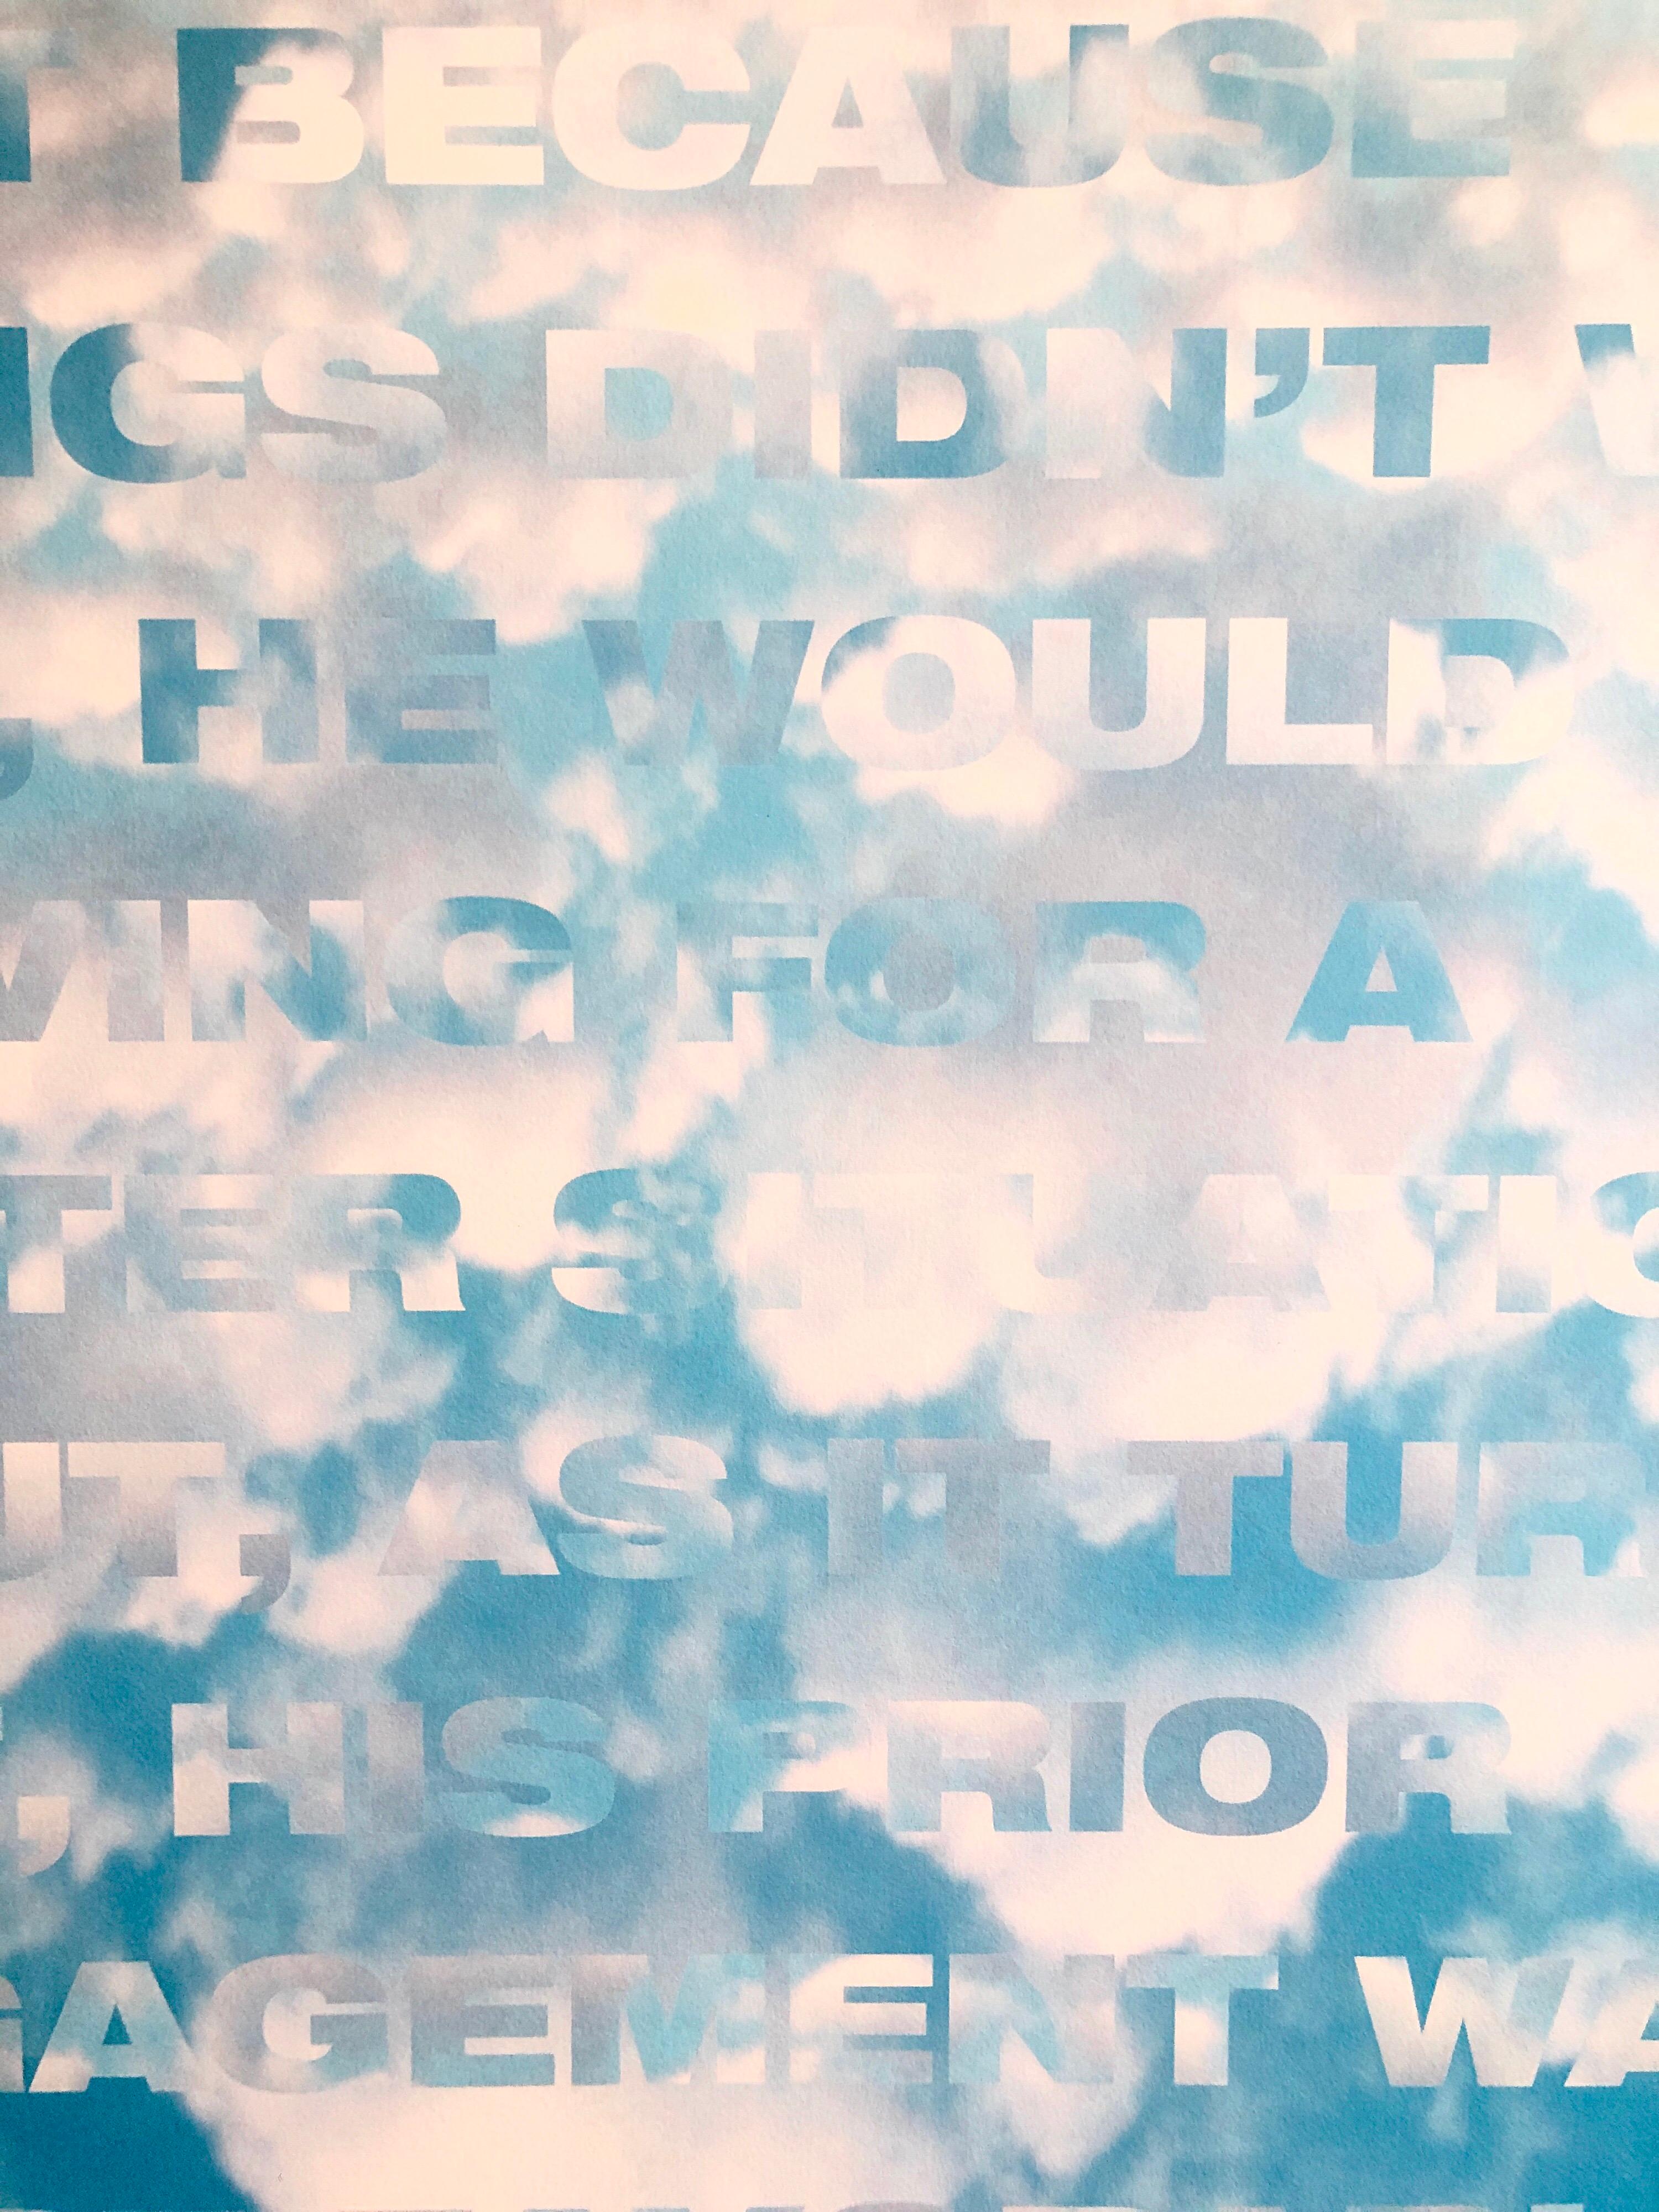 Großer himmelblauer Iris-Druck Texturbasierter Konzeptueller Muse X LA Künstler 1 von 2 B – Print von Fred Fehlau